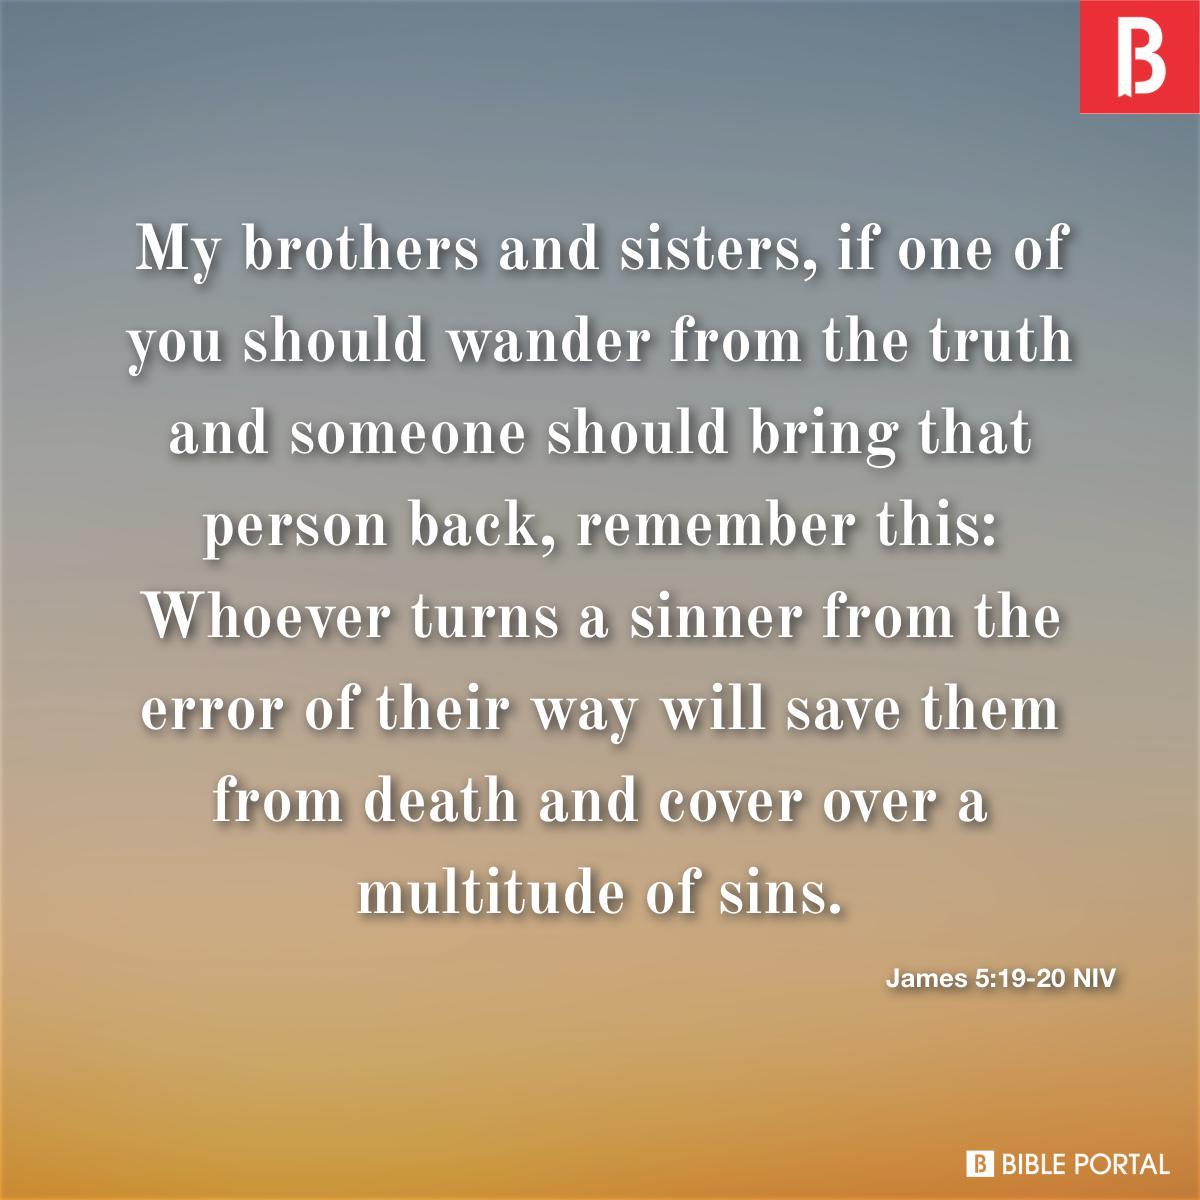 James 5:19-20 NIV